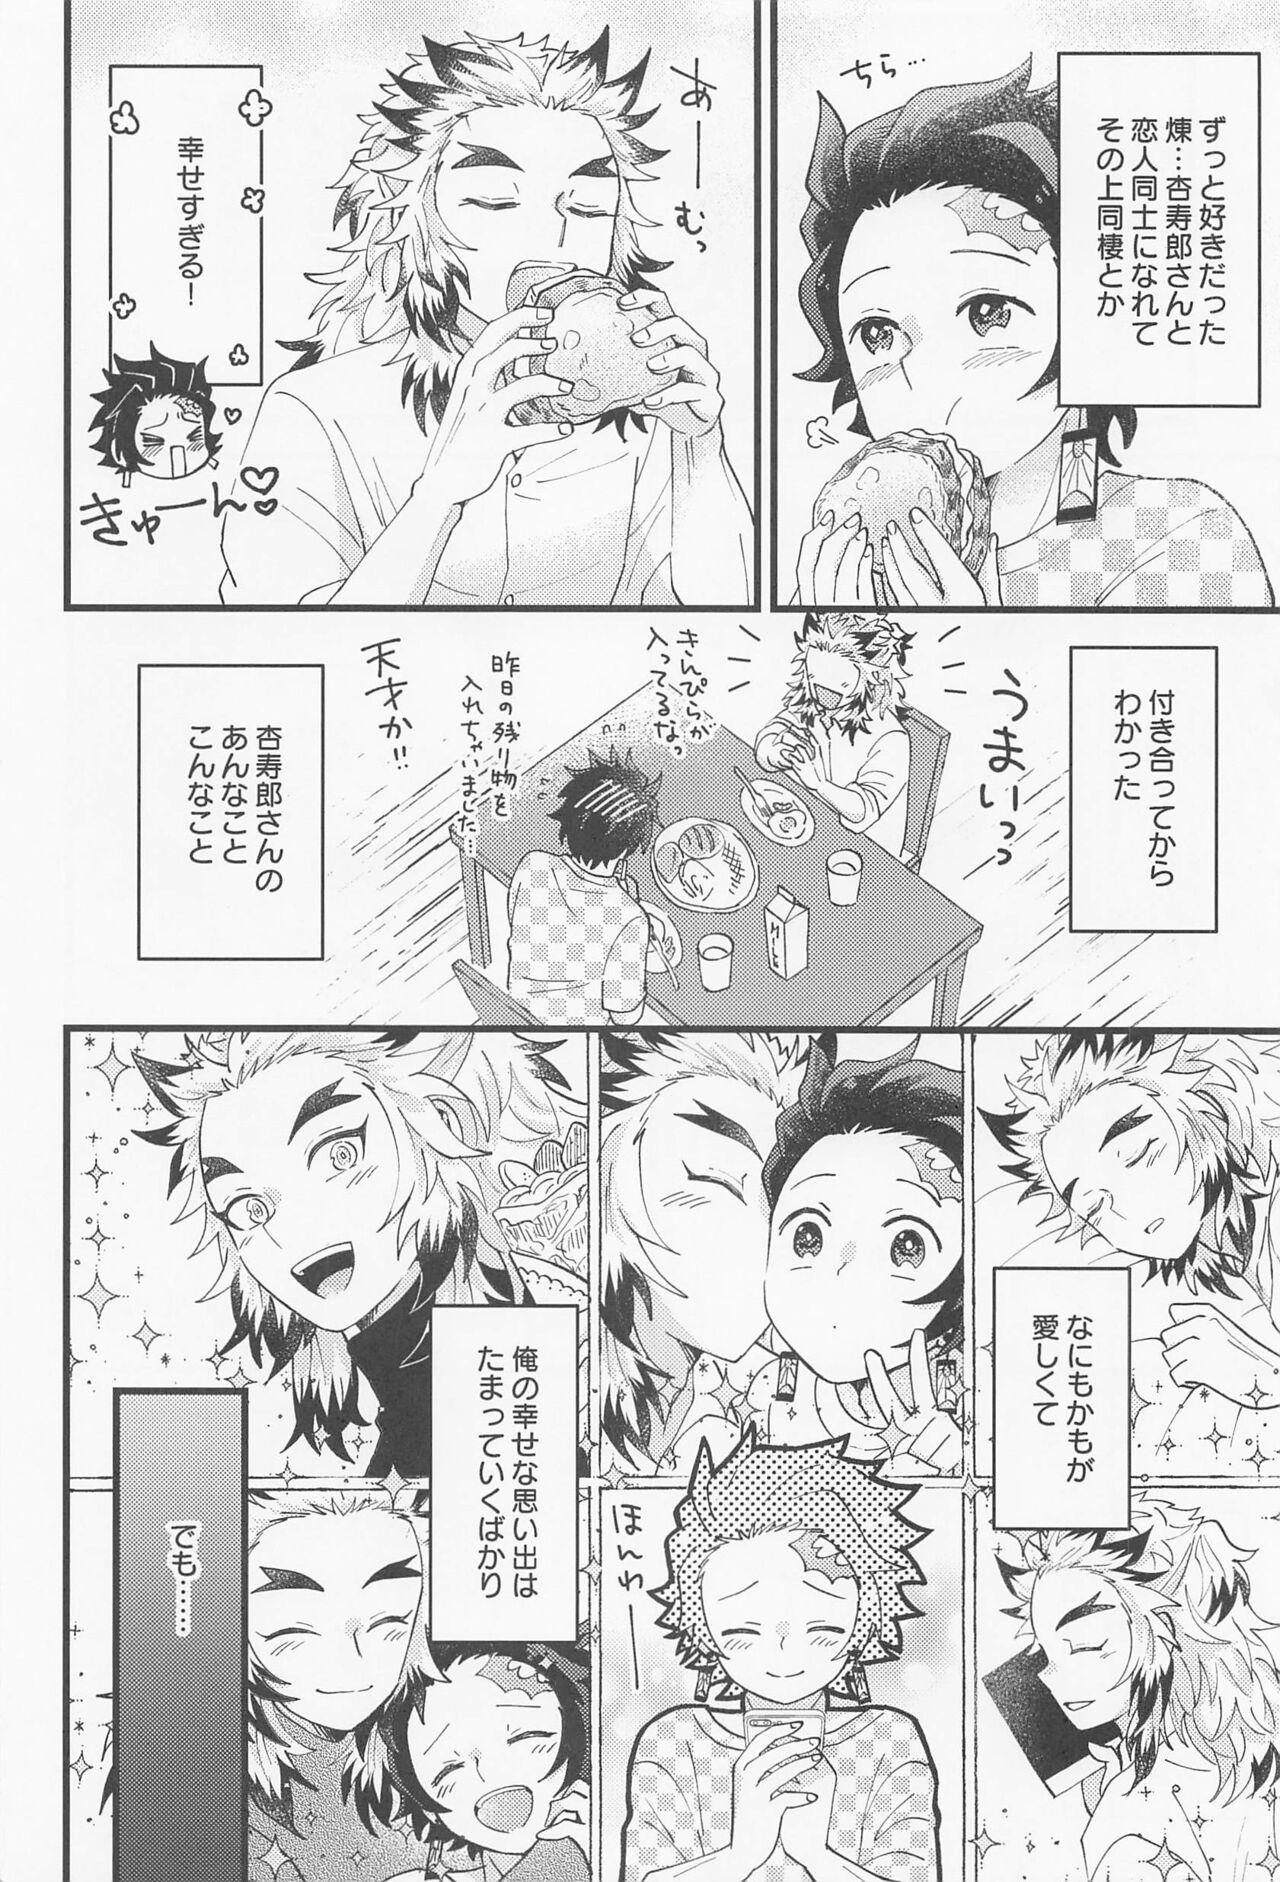 Curious Saiminkan ga Shitai desu - Kimetsu no yaiba Tugjob - Page 3